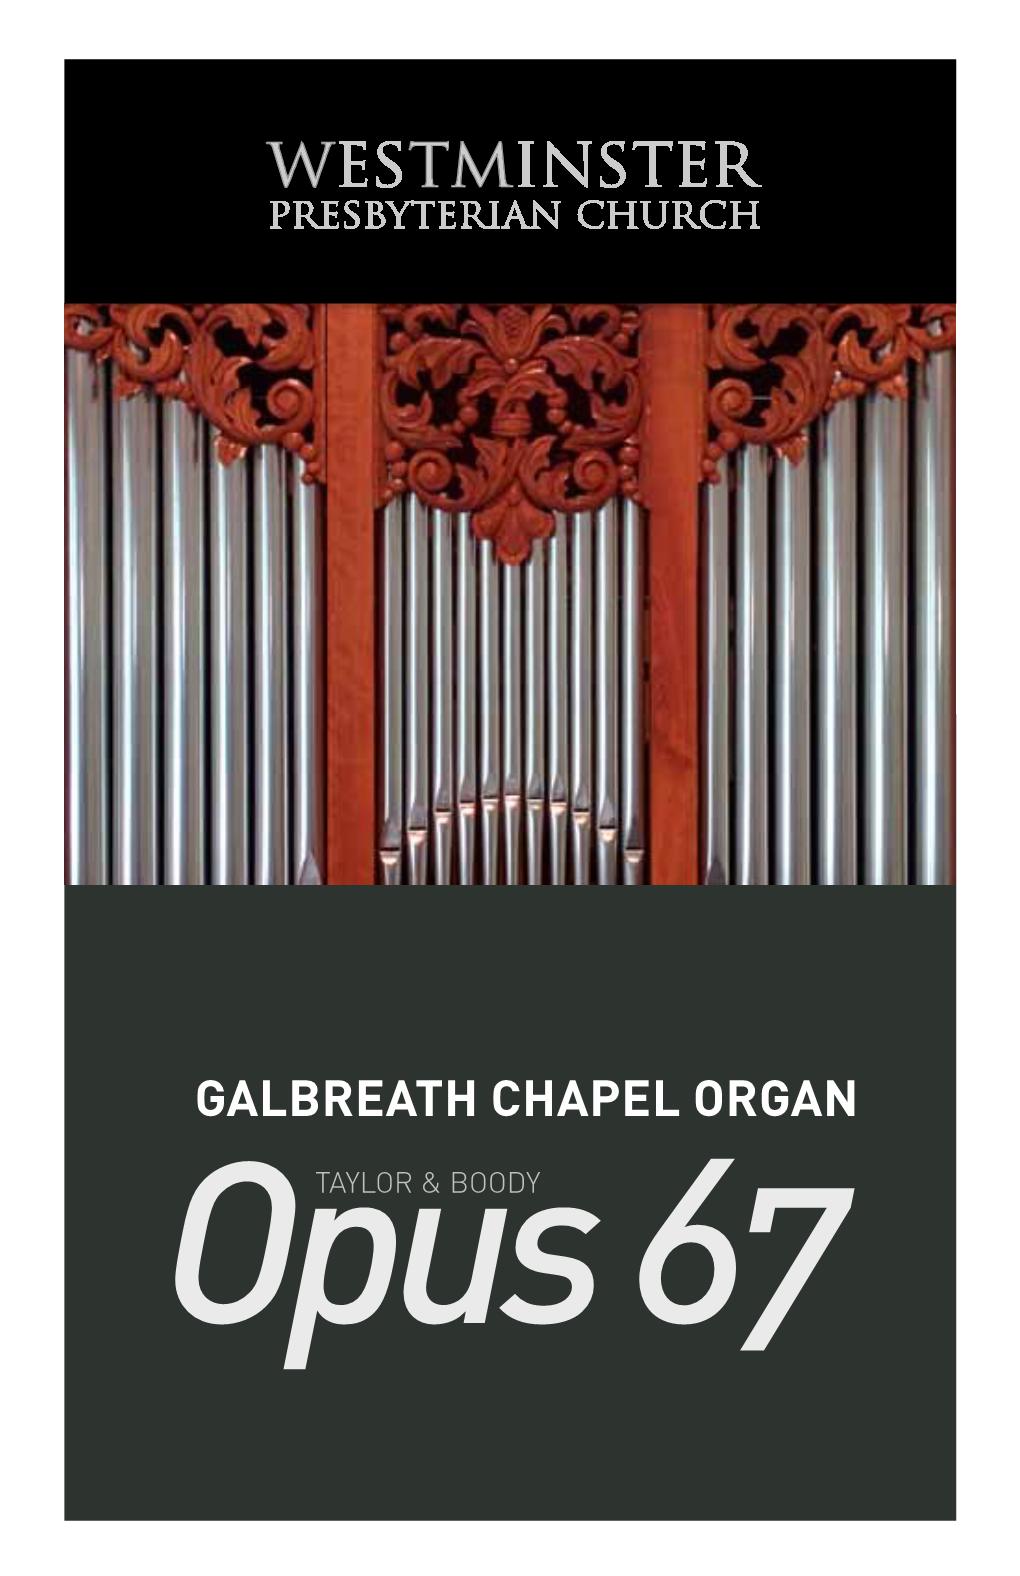 Galbreath Chapel Organ Opustaylor & BOODY 67